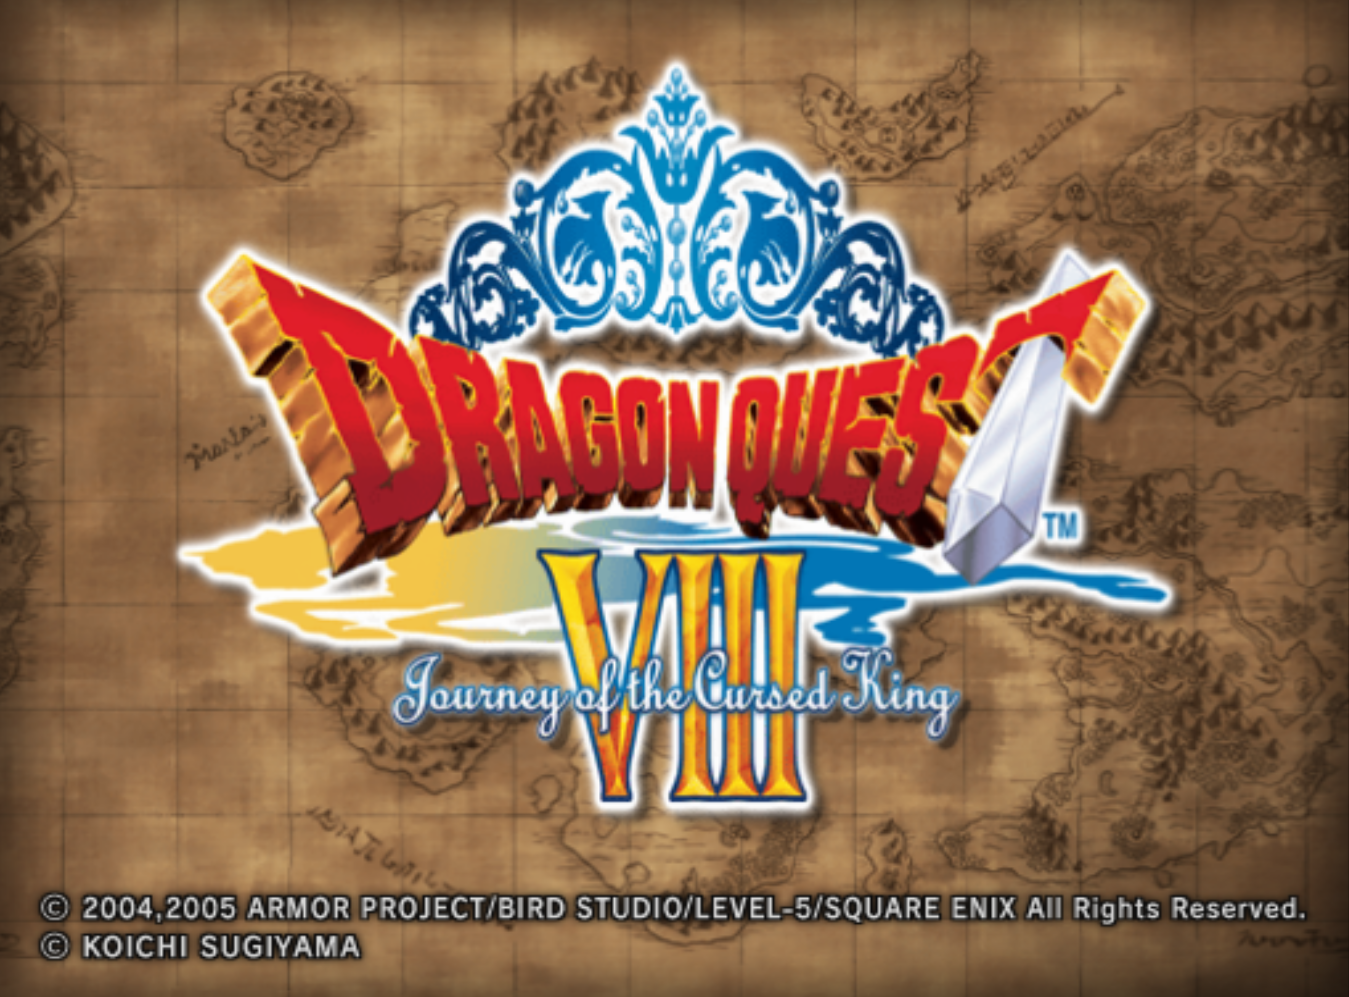 Dragon Quest 1 Retro Poster